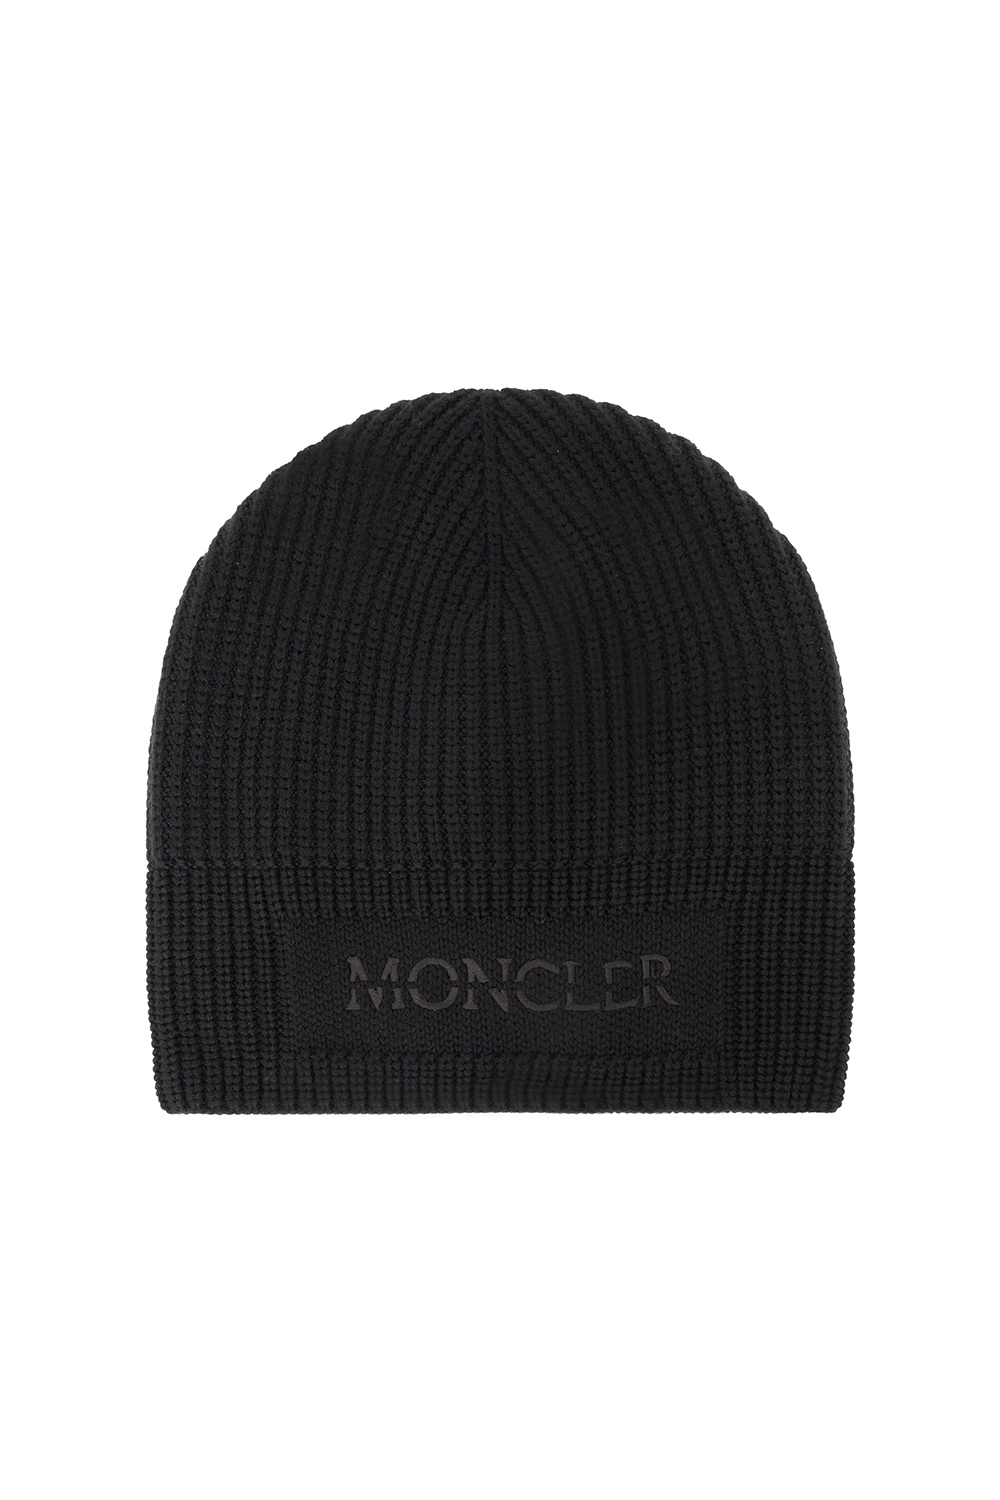 Moncler hat 7-5 box mats women polo-shirts pens